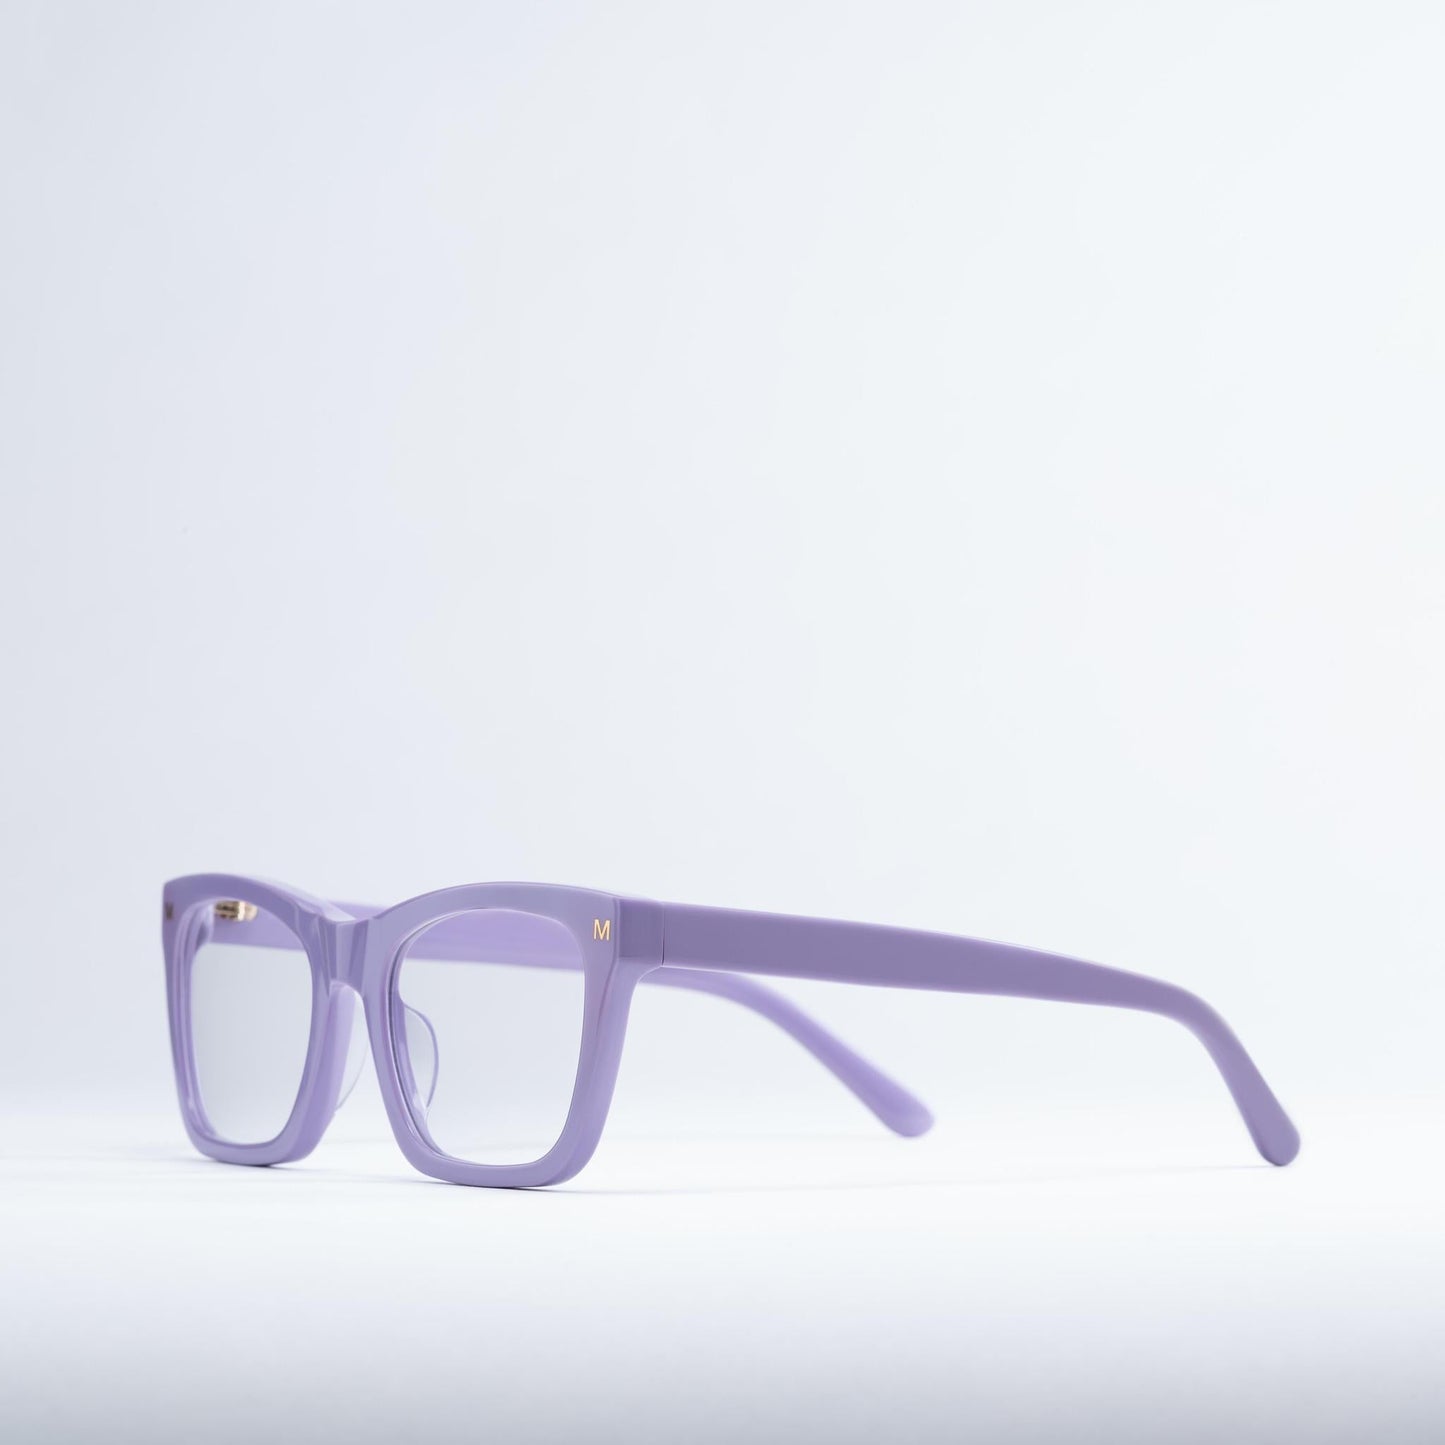 MACHETE Glasses in Violet